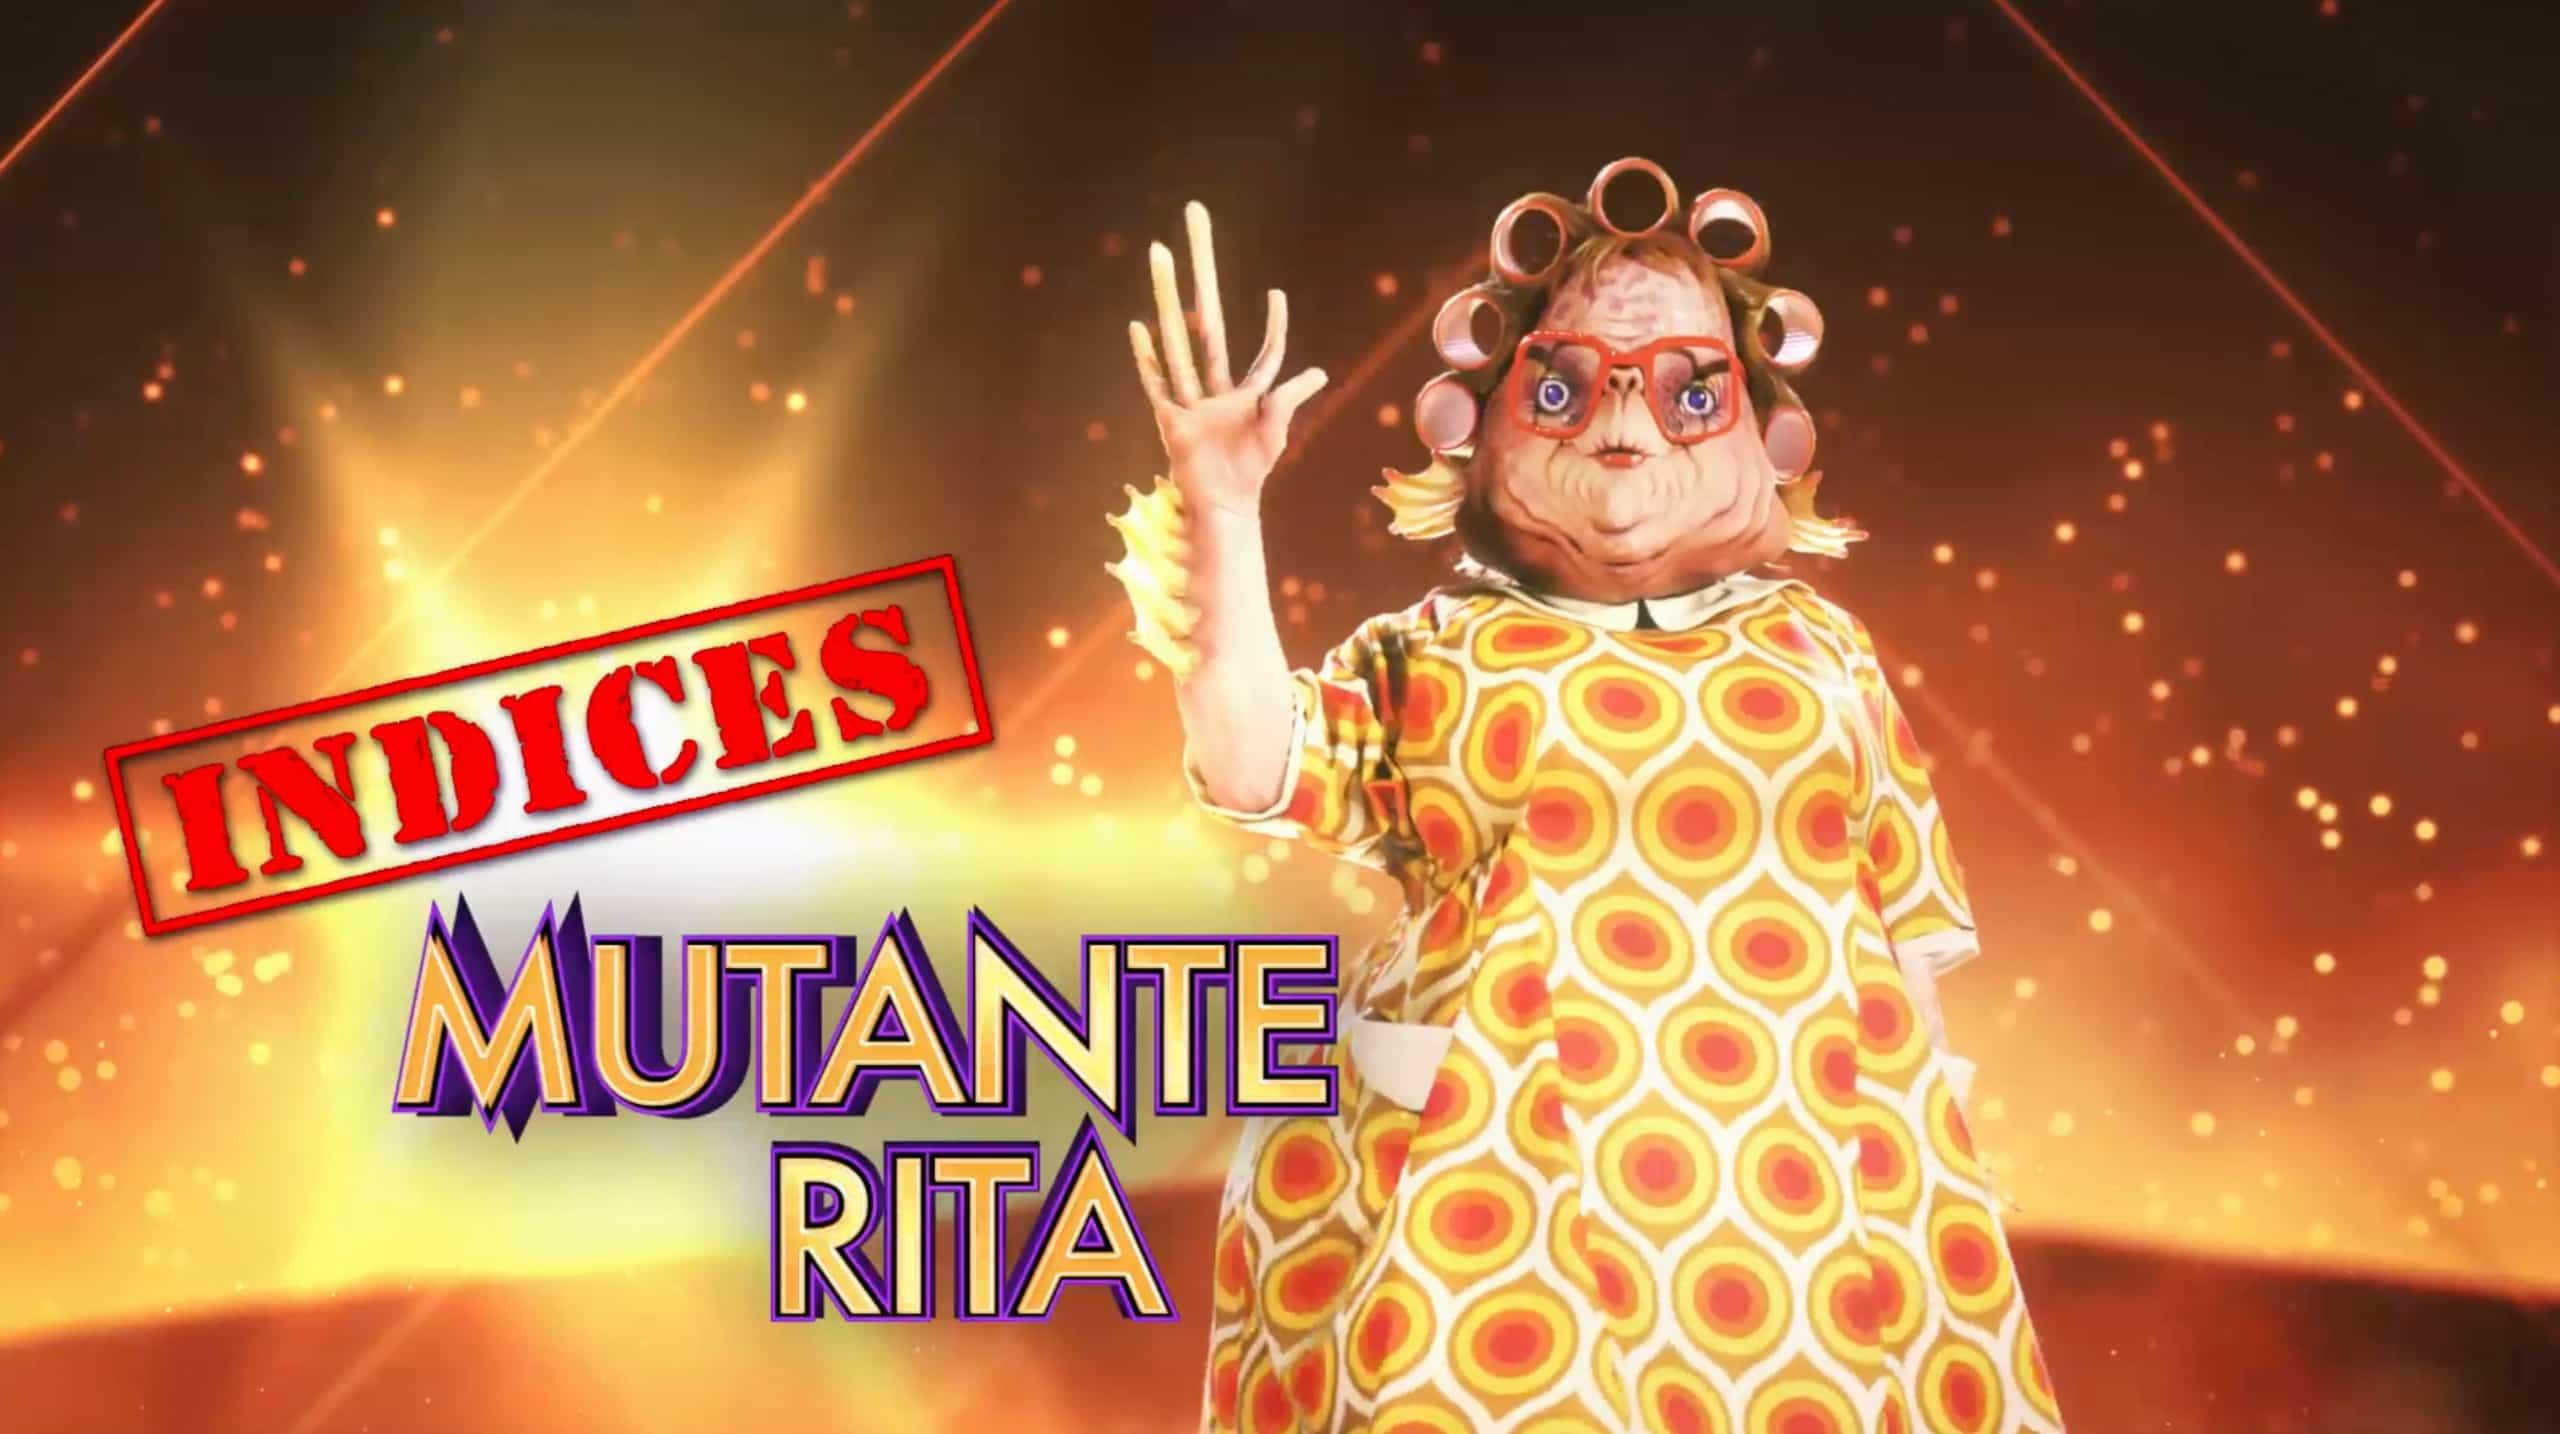 Mutante Rita - Indices 4